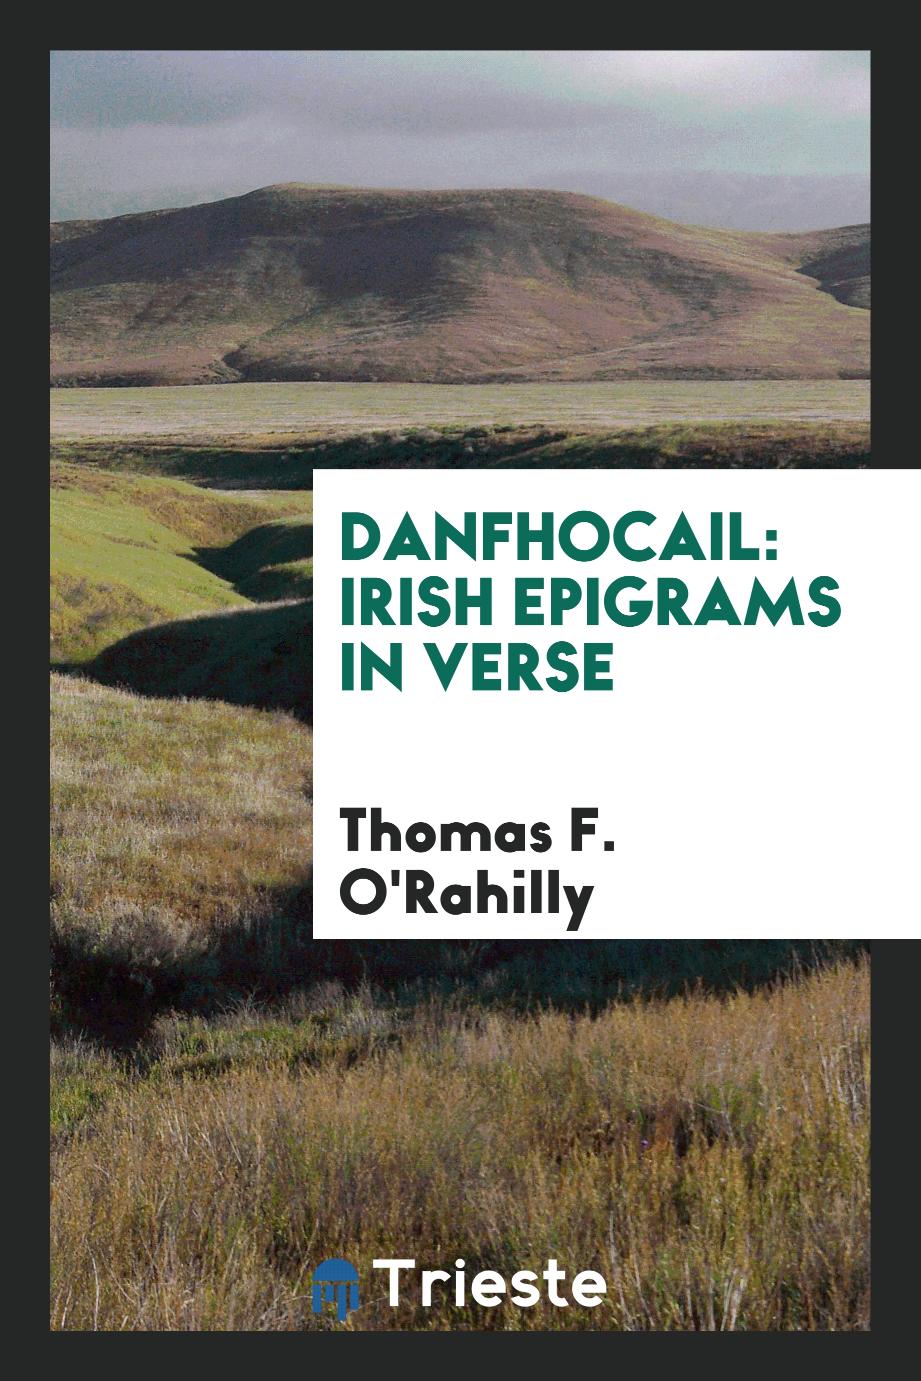 Danfhocail: Irish epigrams in verse